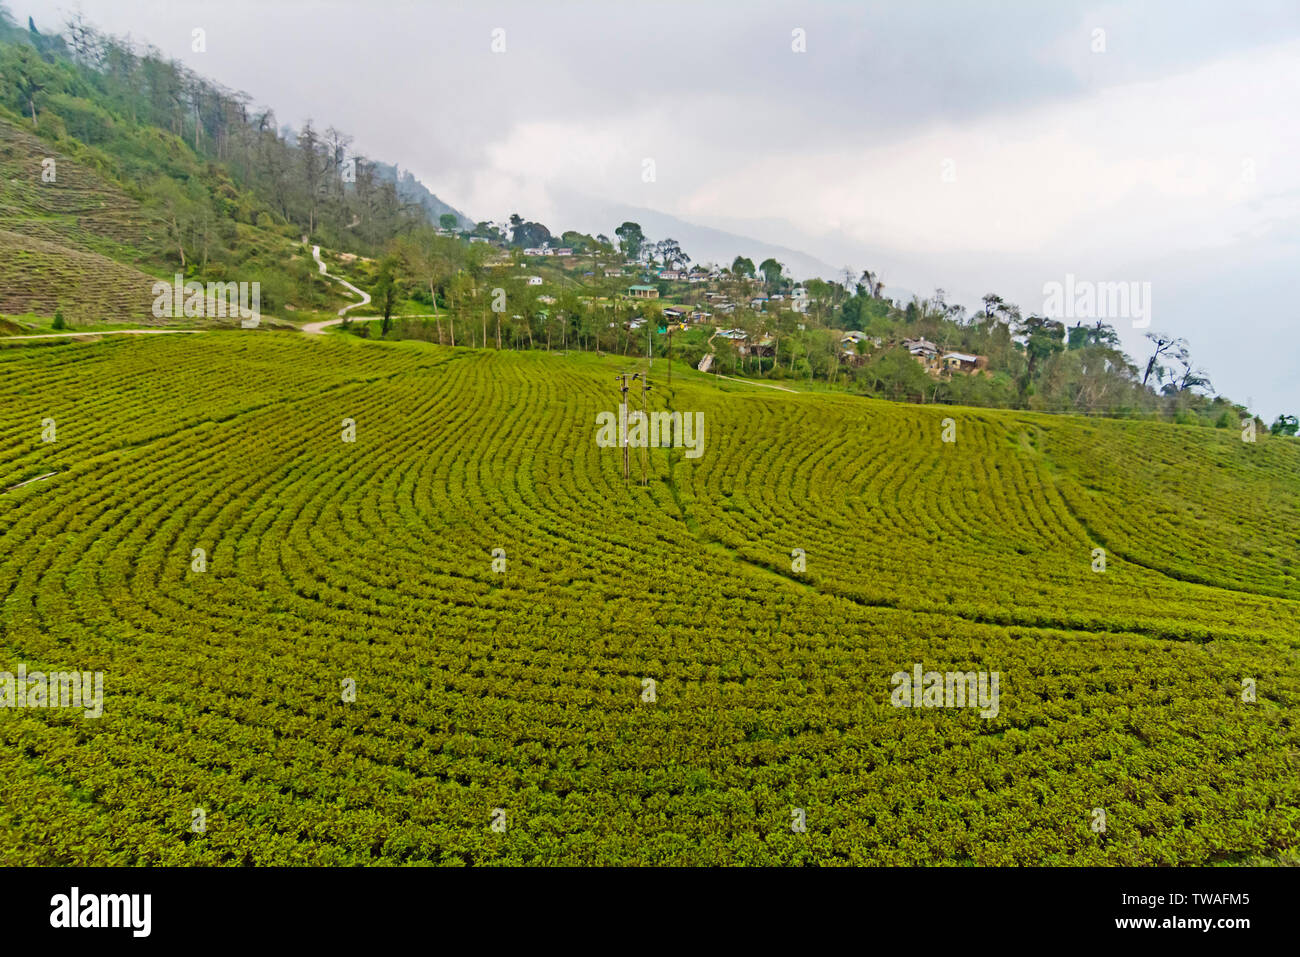 Tea plantation at Temi Tea Estate, Sikkim, India. Stock Photo